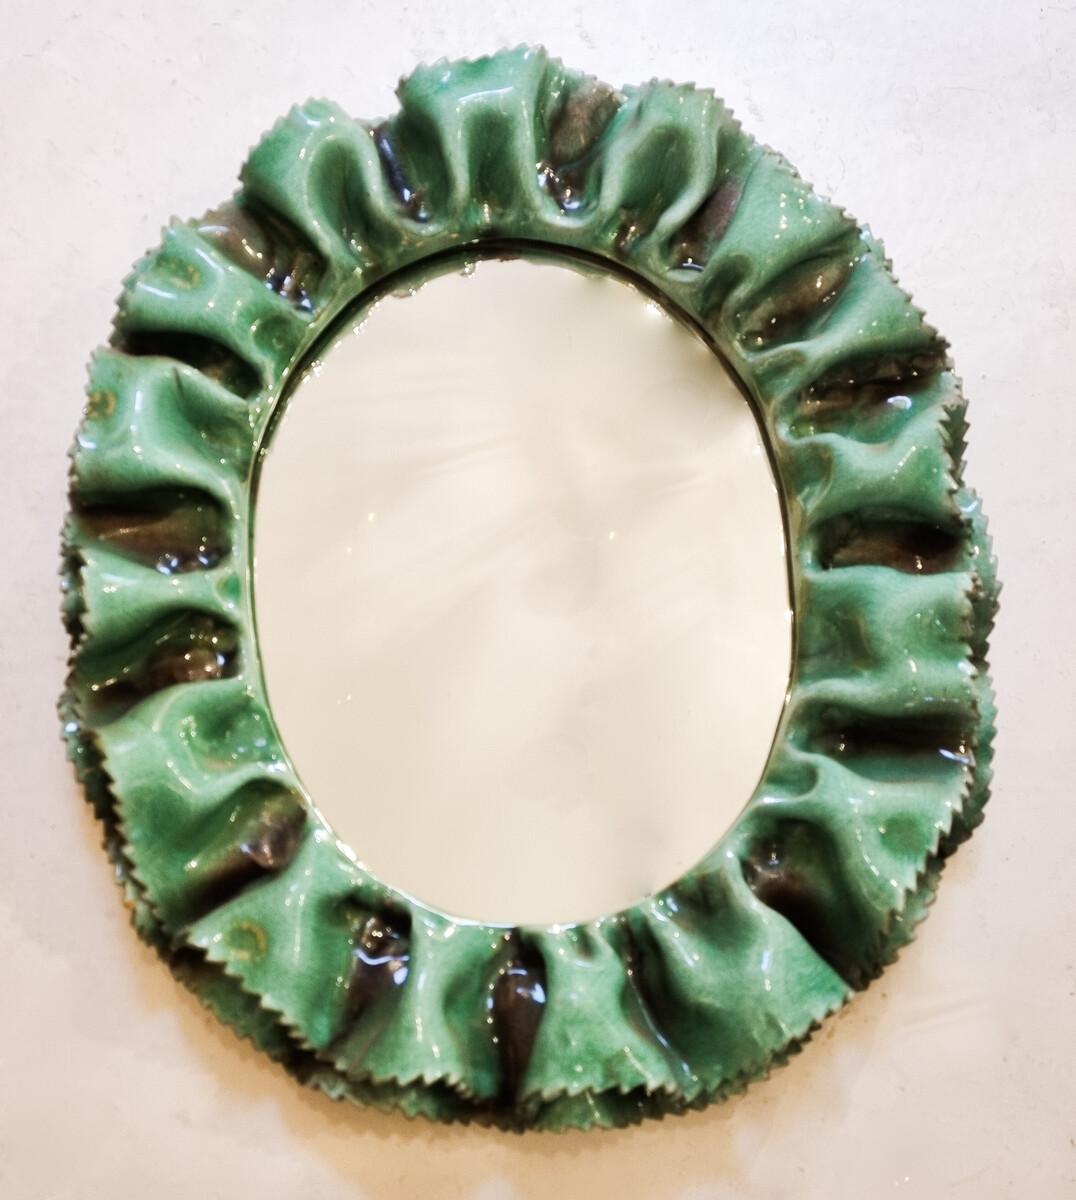 Italian Mid-Century Green Ceramic Wall Mirror by Fausto Melotti, Italy 1950s